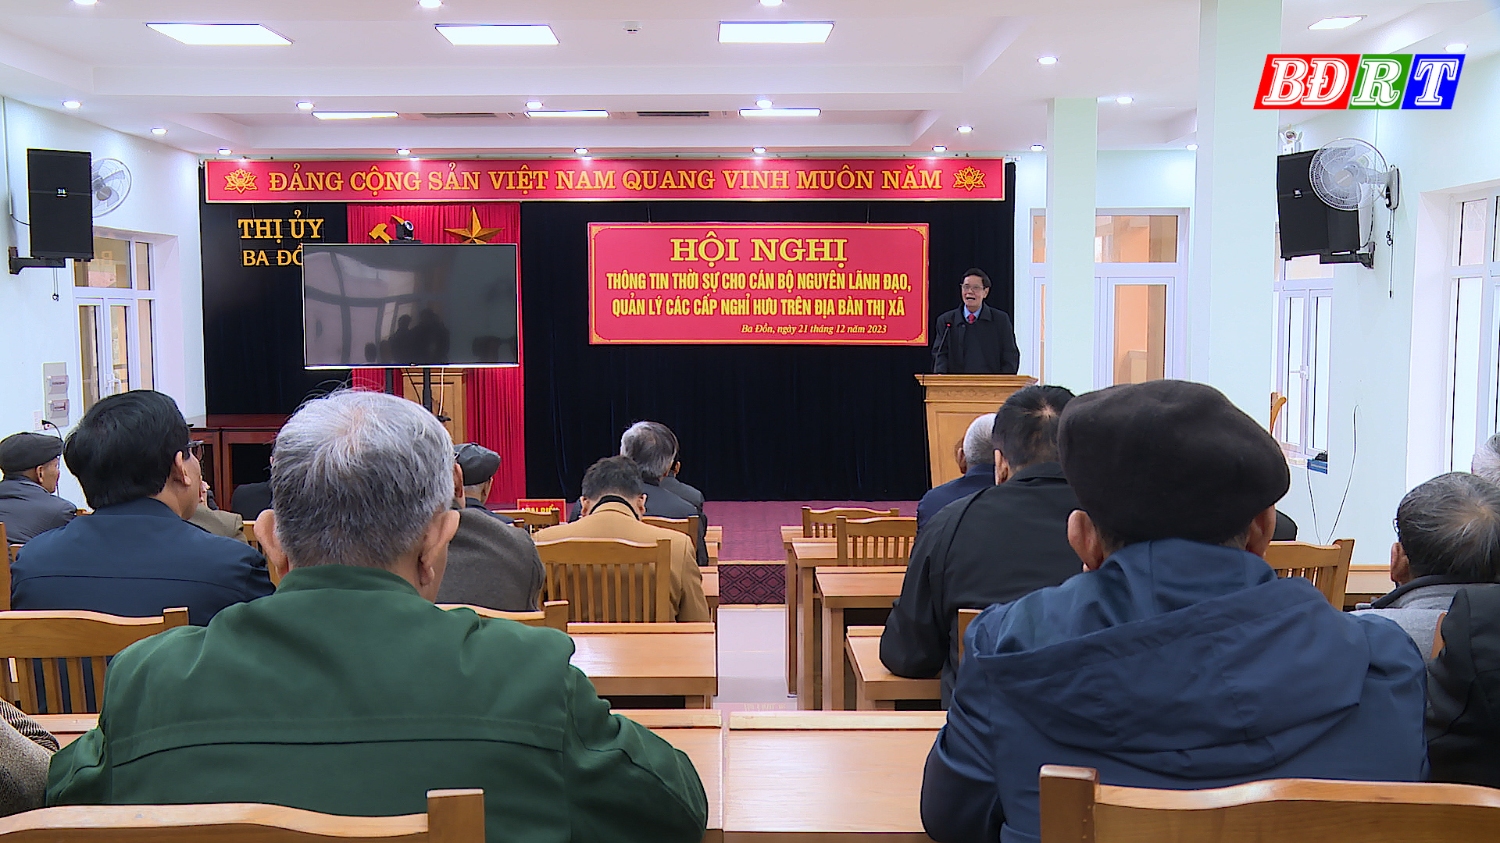 Hội nghị thông tin thời sự cho cán bộ nguyên lãnh đạo, quản lý các cấp nghỉ hưu trên địa bàn thị xã Ba Đồn